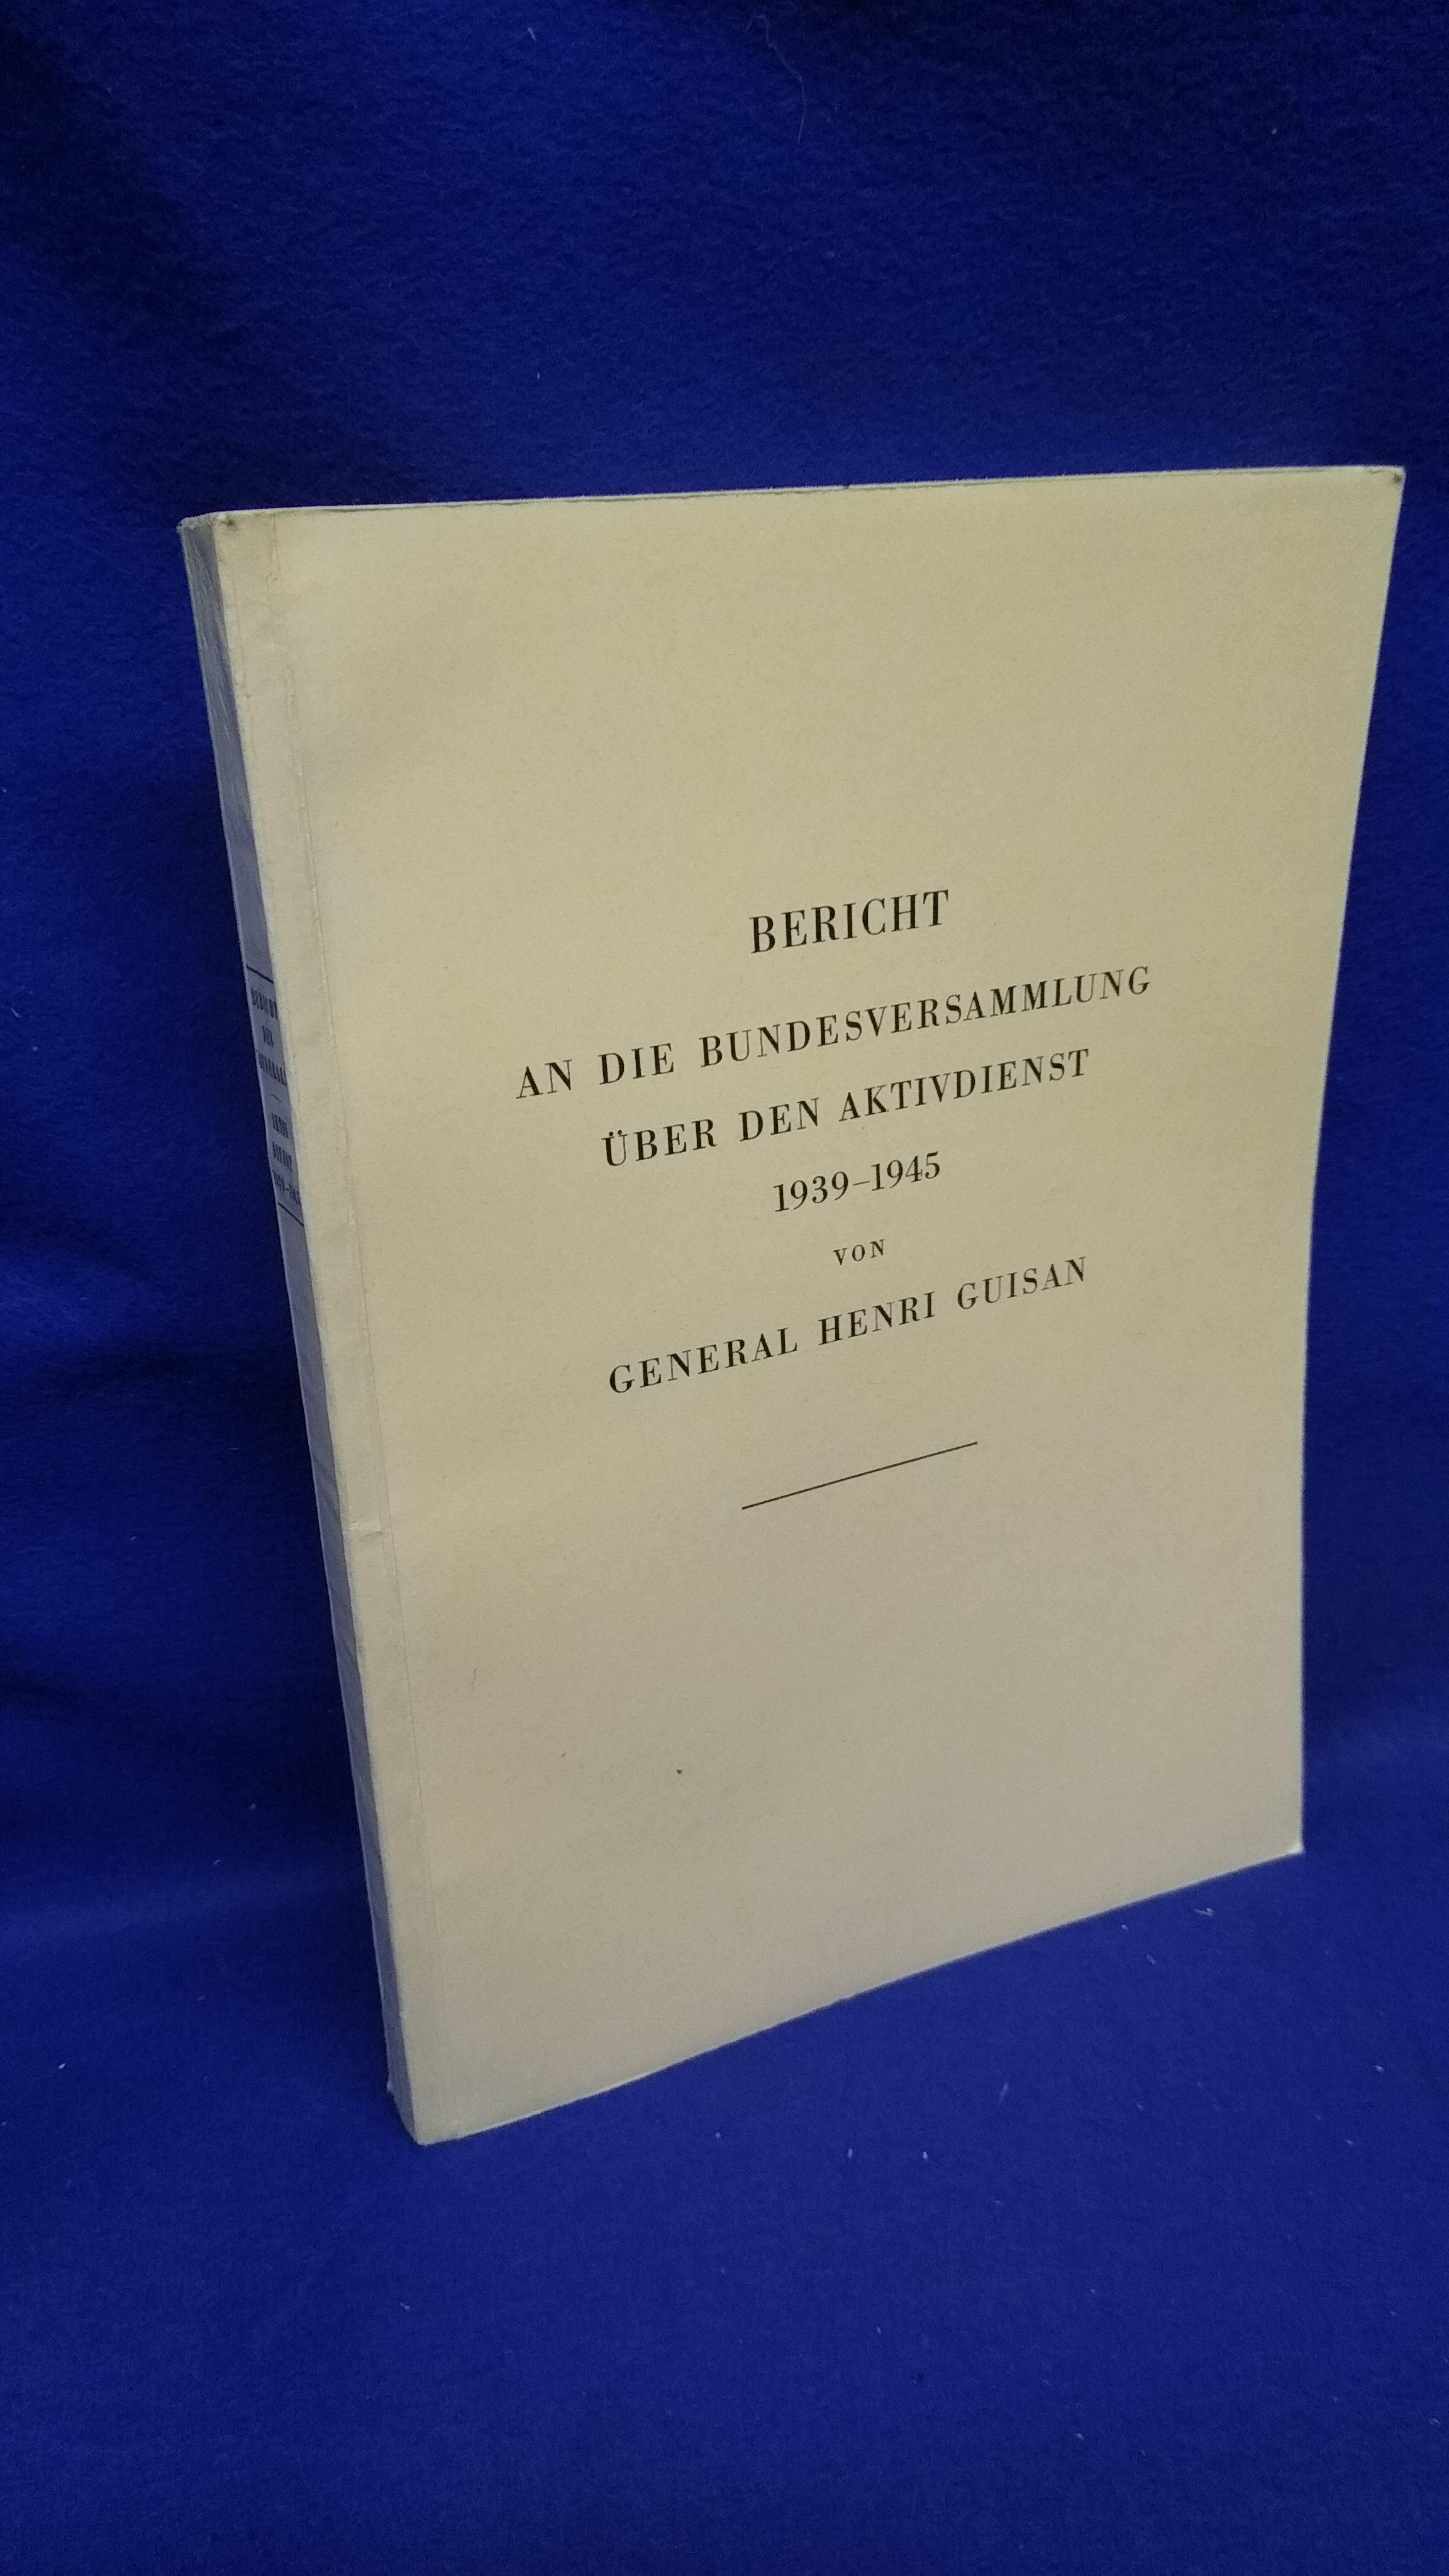 Bericht an die Bundesversammlung über den Aktivdienst 1939 - 1945